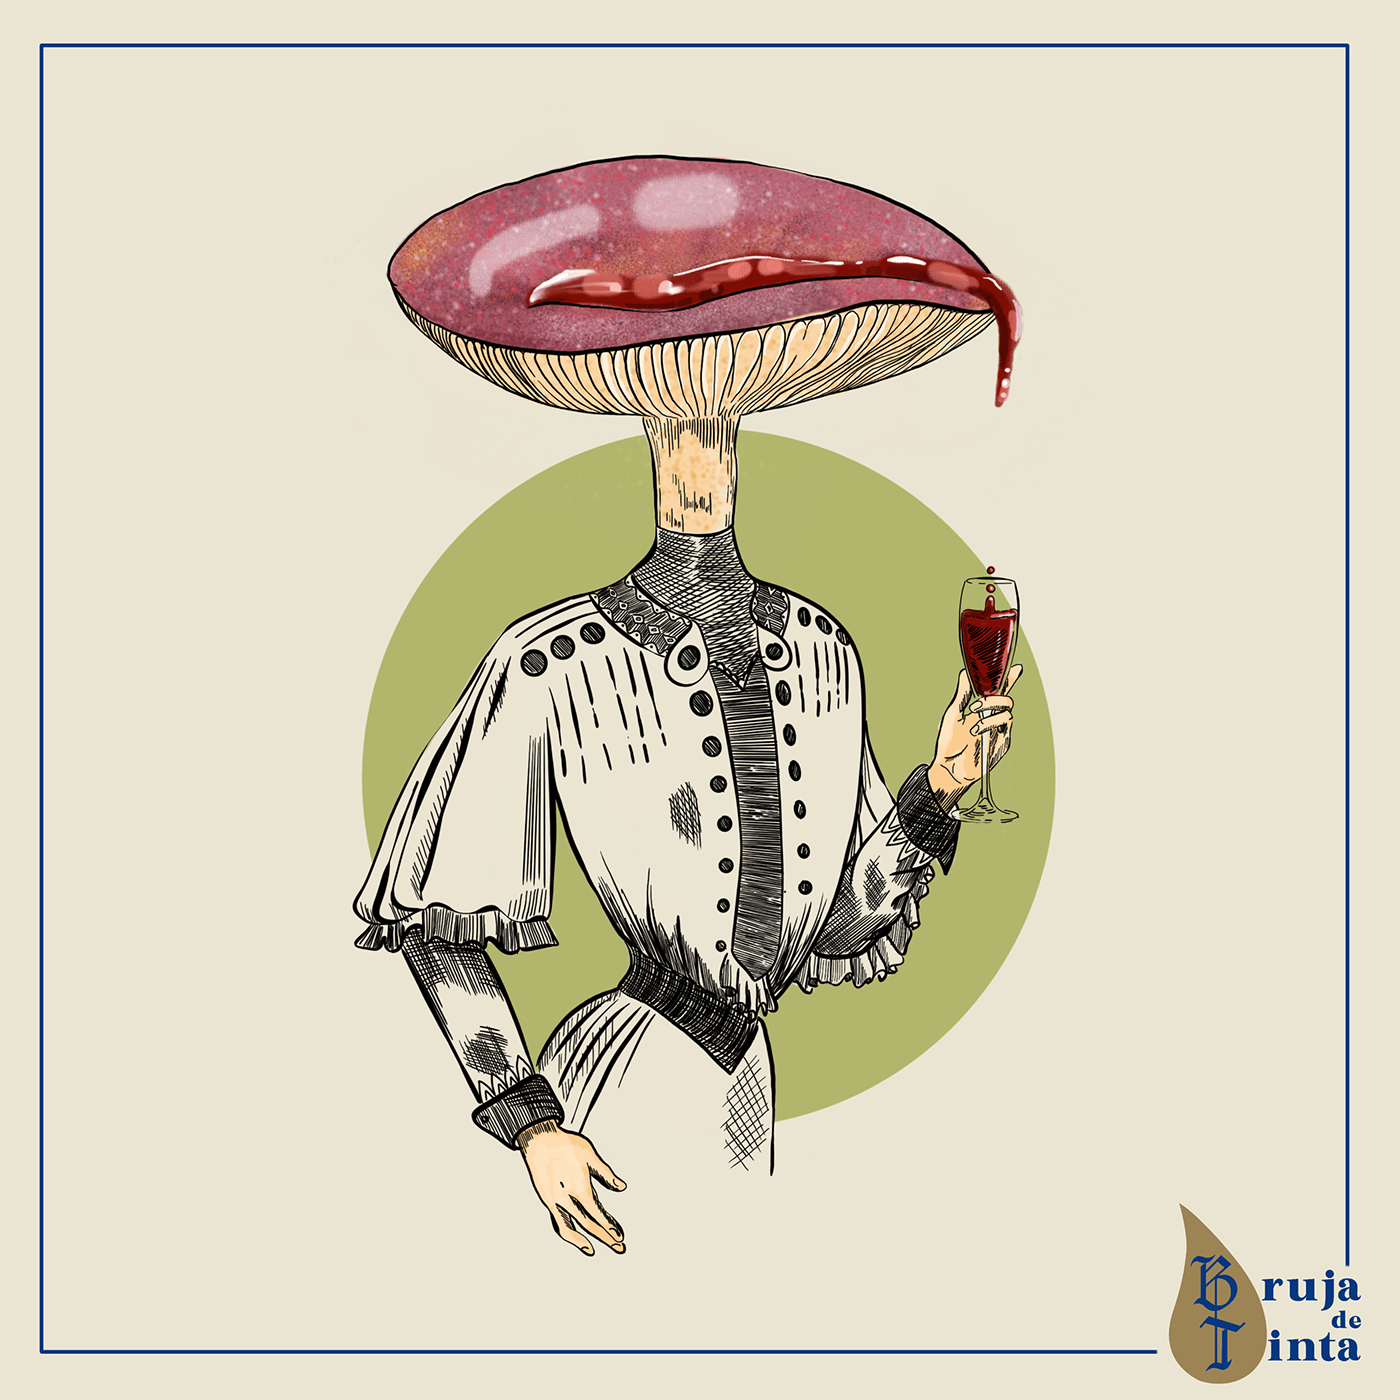 hongos Edwardian ladys mushroom digital personajes moda ilustración científica científico época eduardiana miselio mitologo